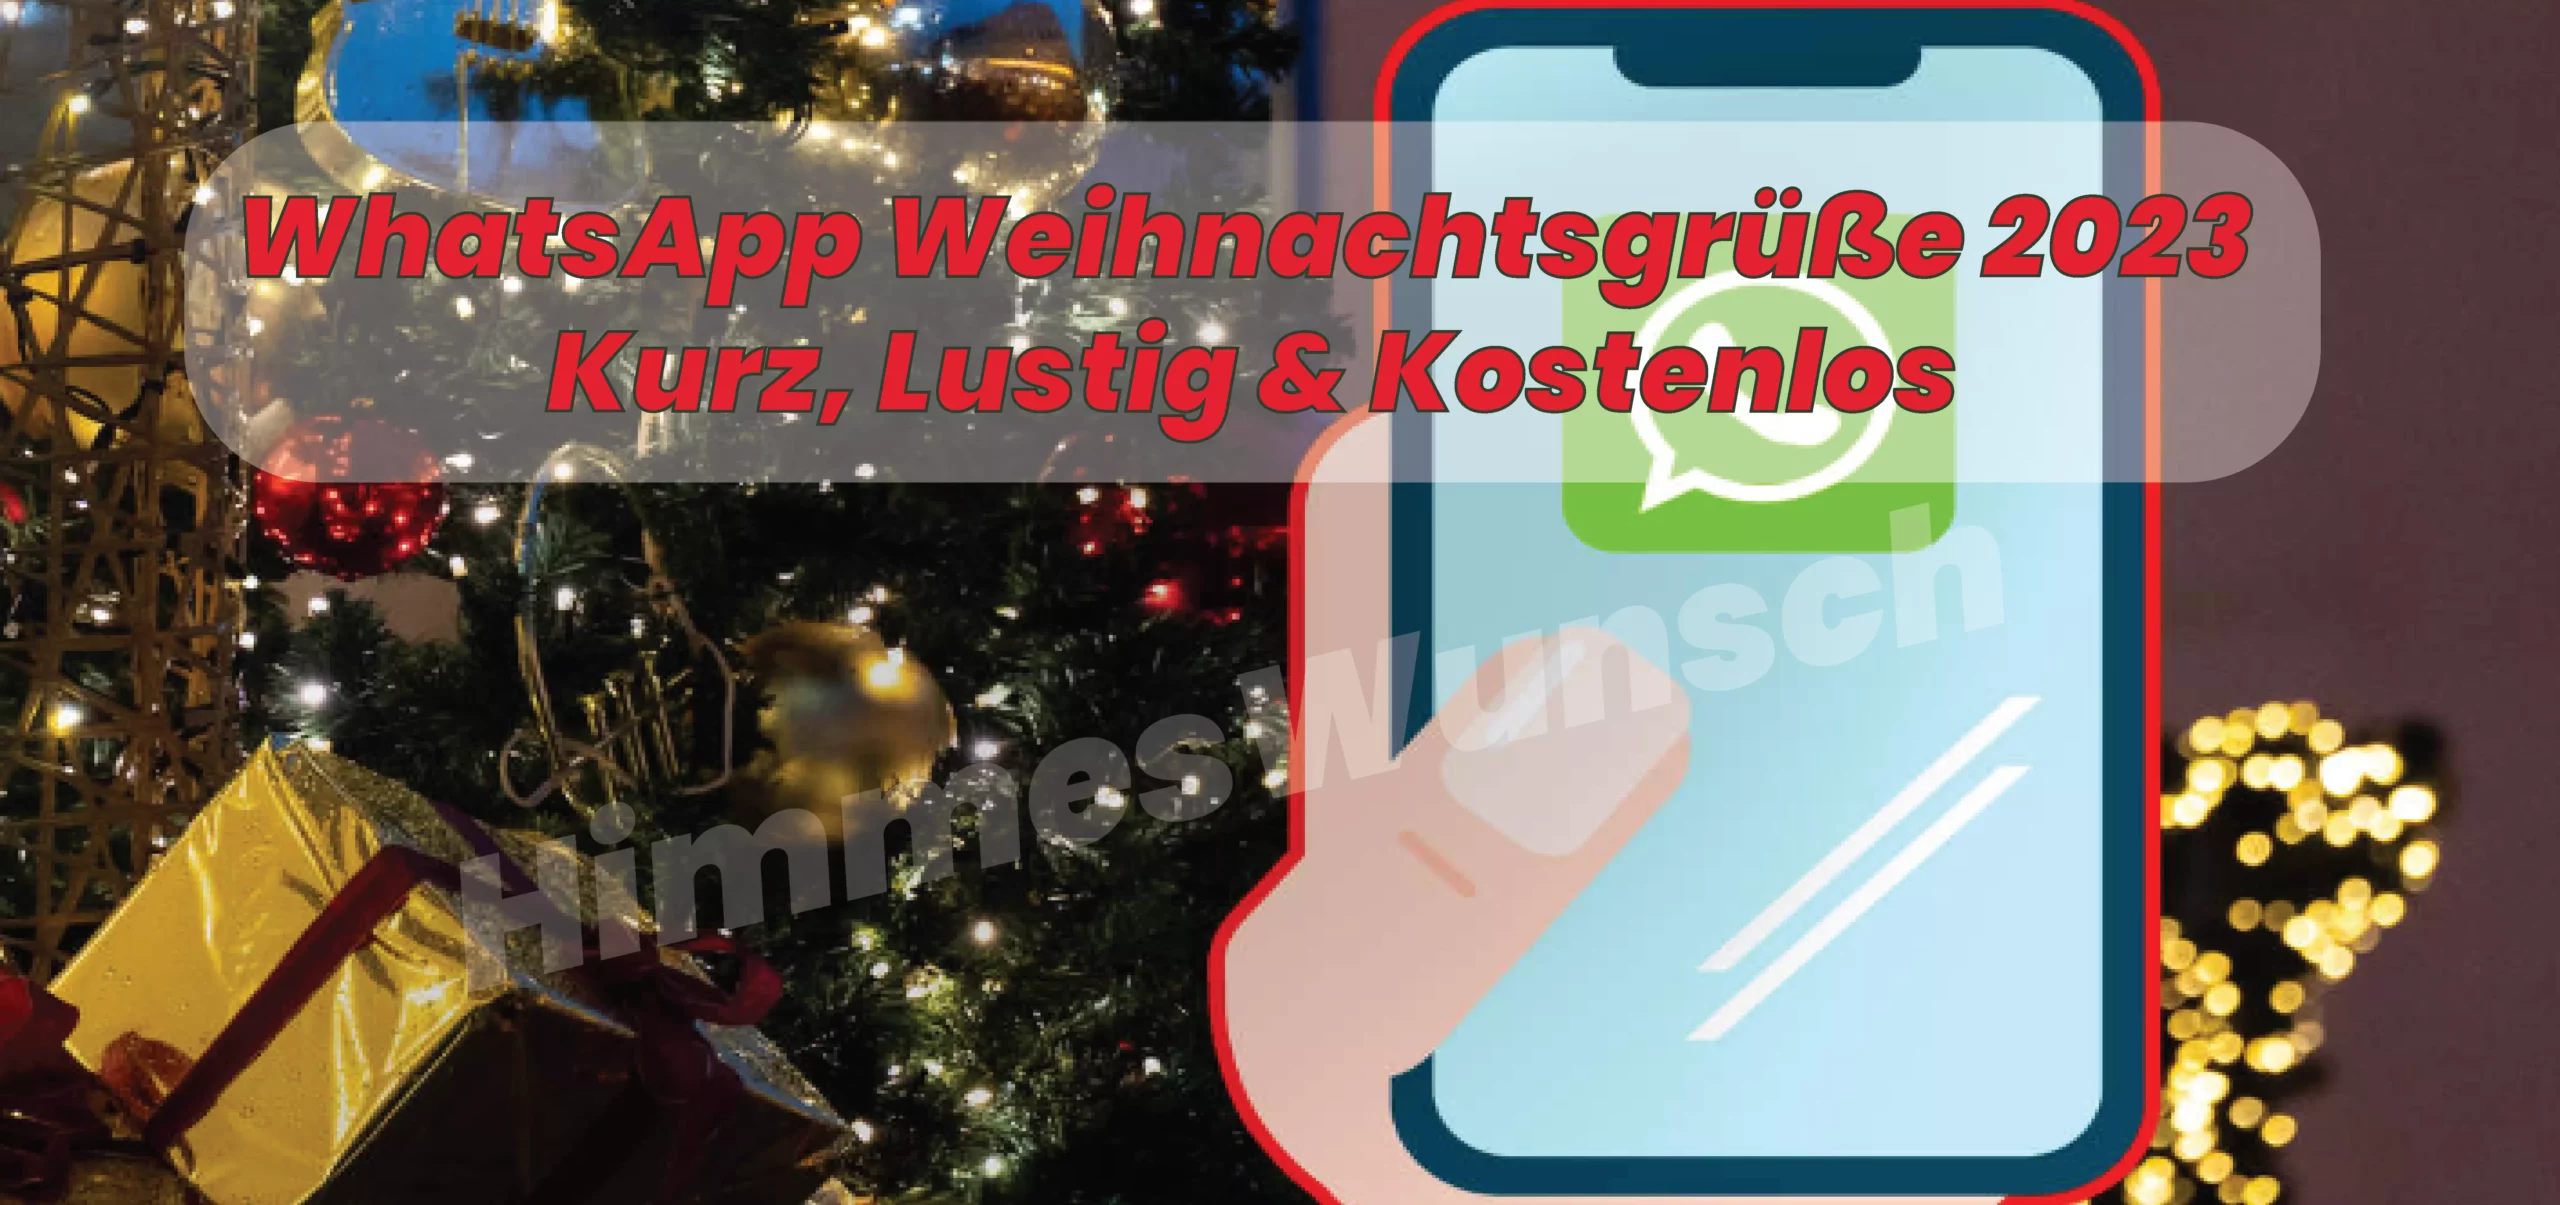 WhatsApp Weihnachtsgrüße 2023